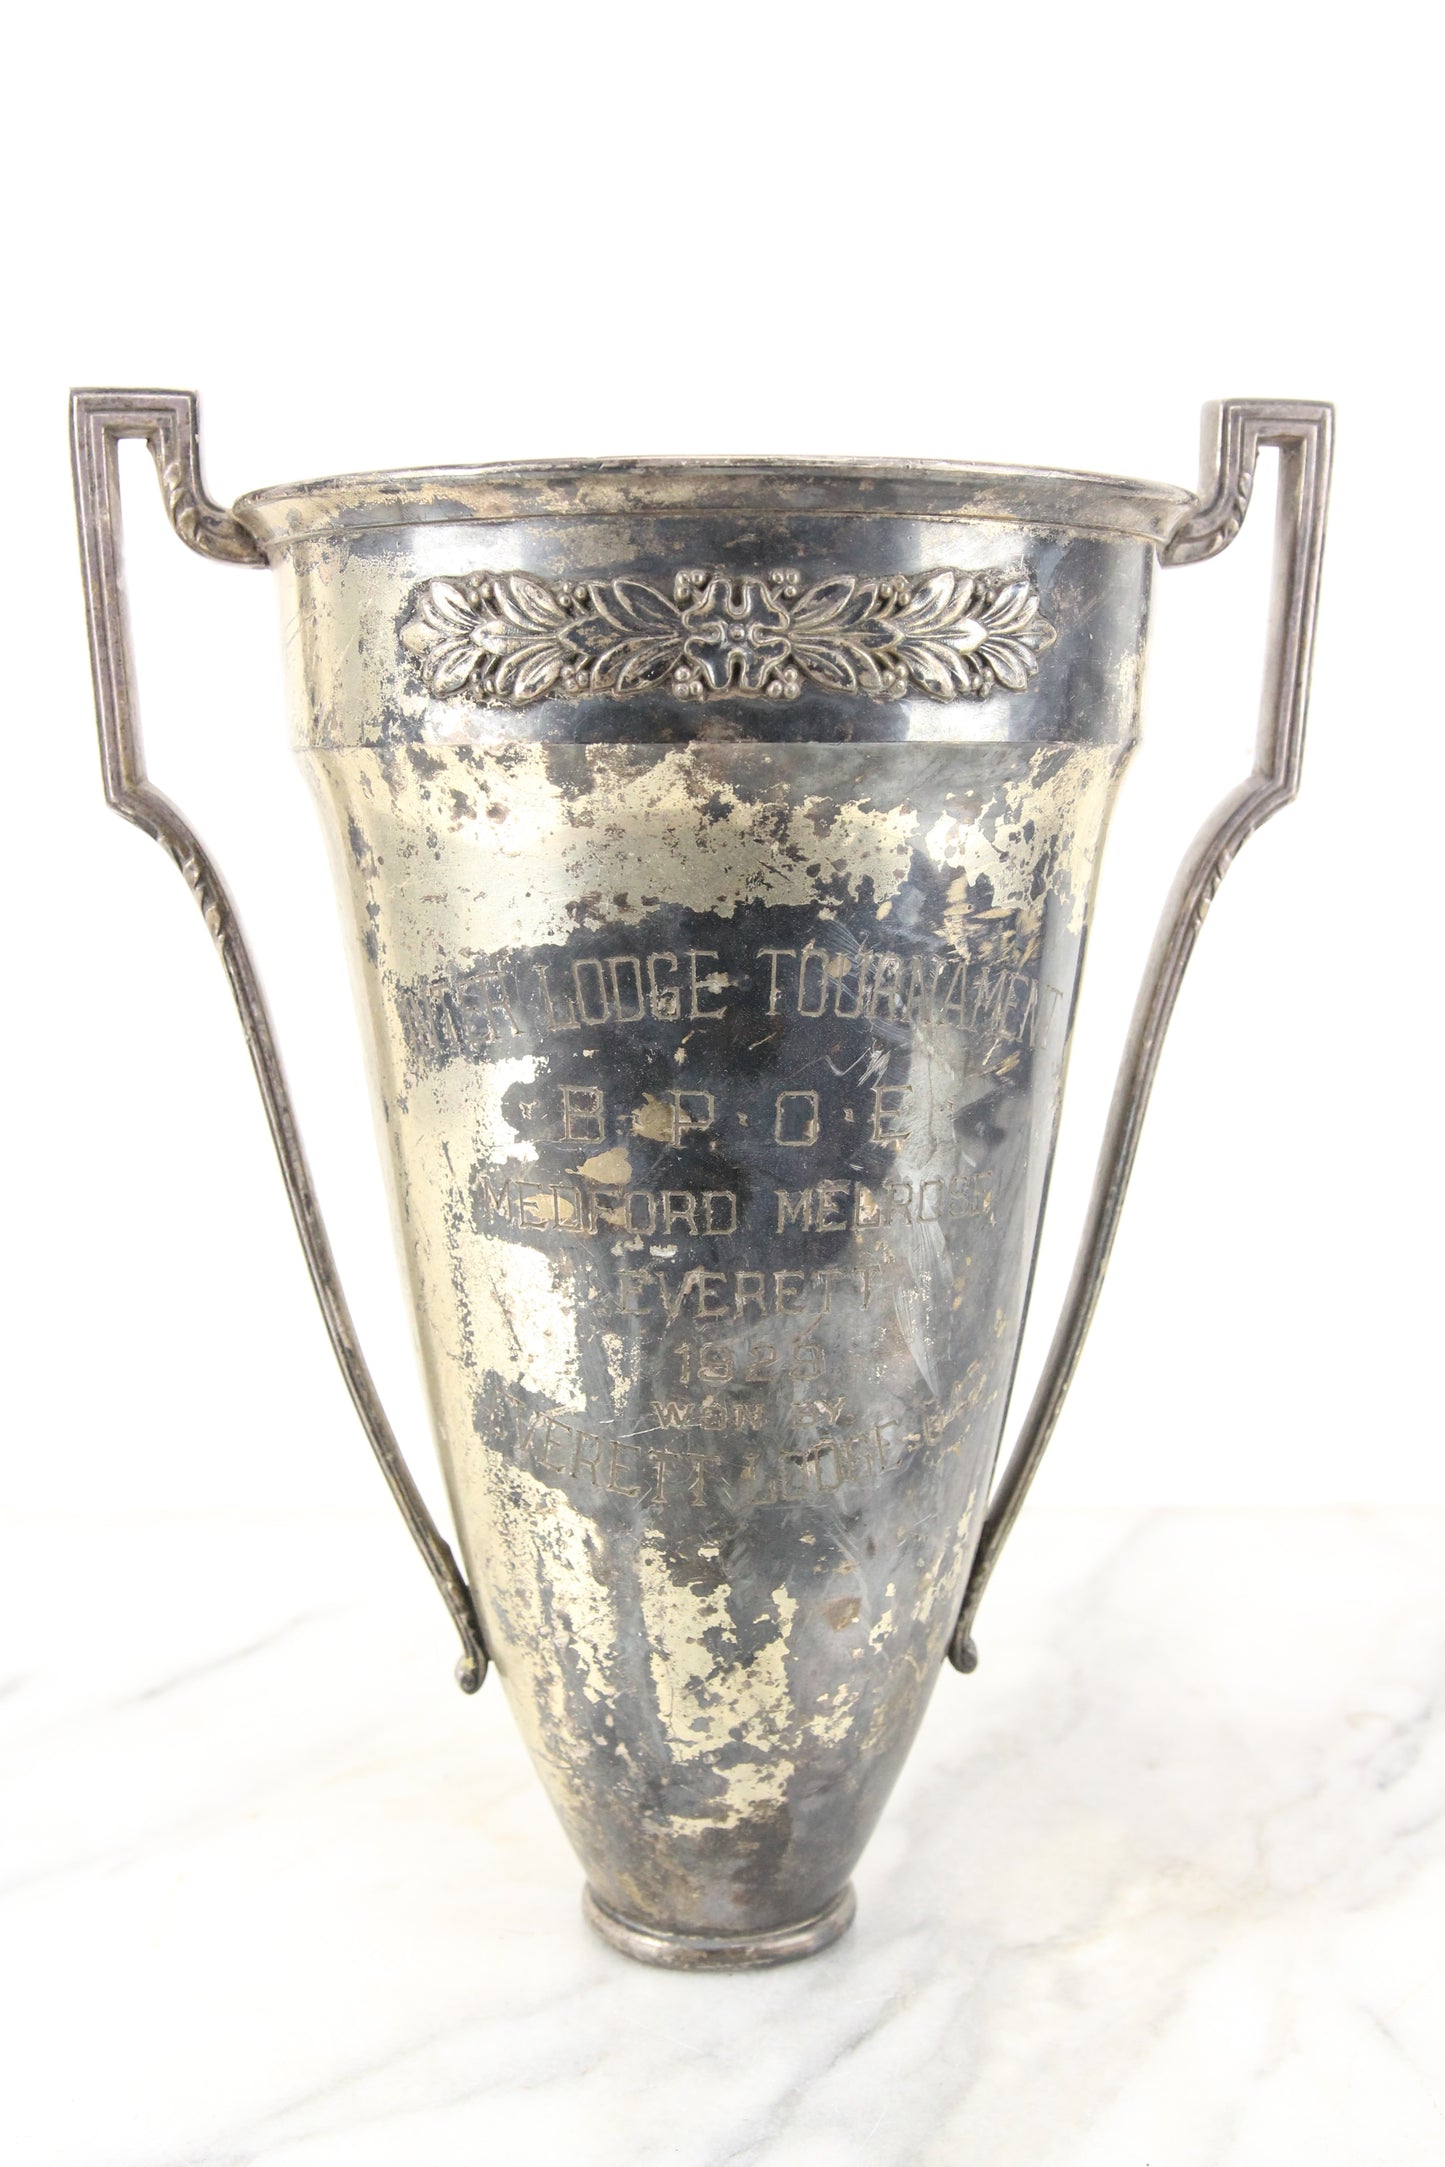 Medford, Melrose, and Everett Elks Inter Lodge Tournament Trophy, 1929